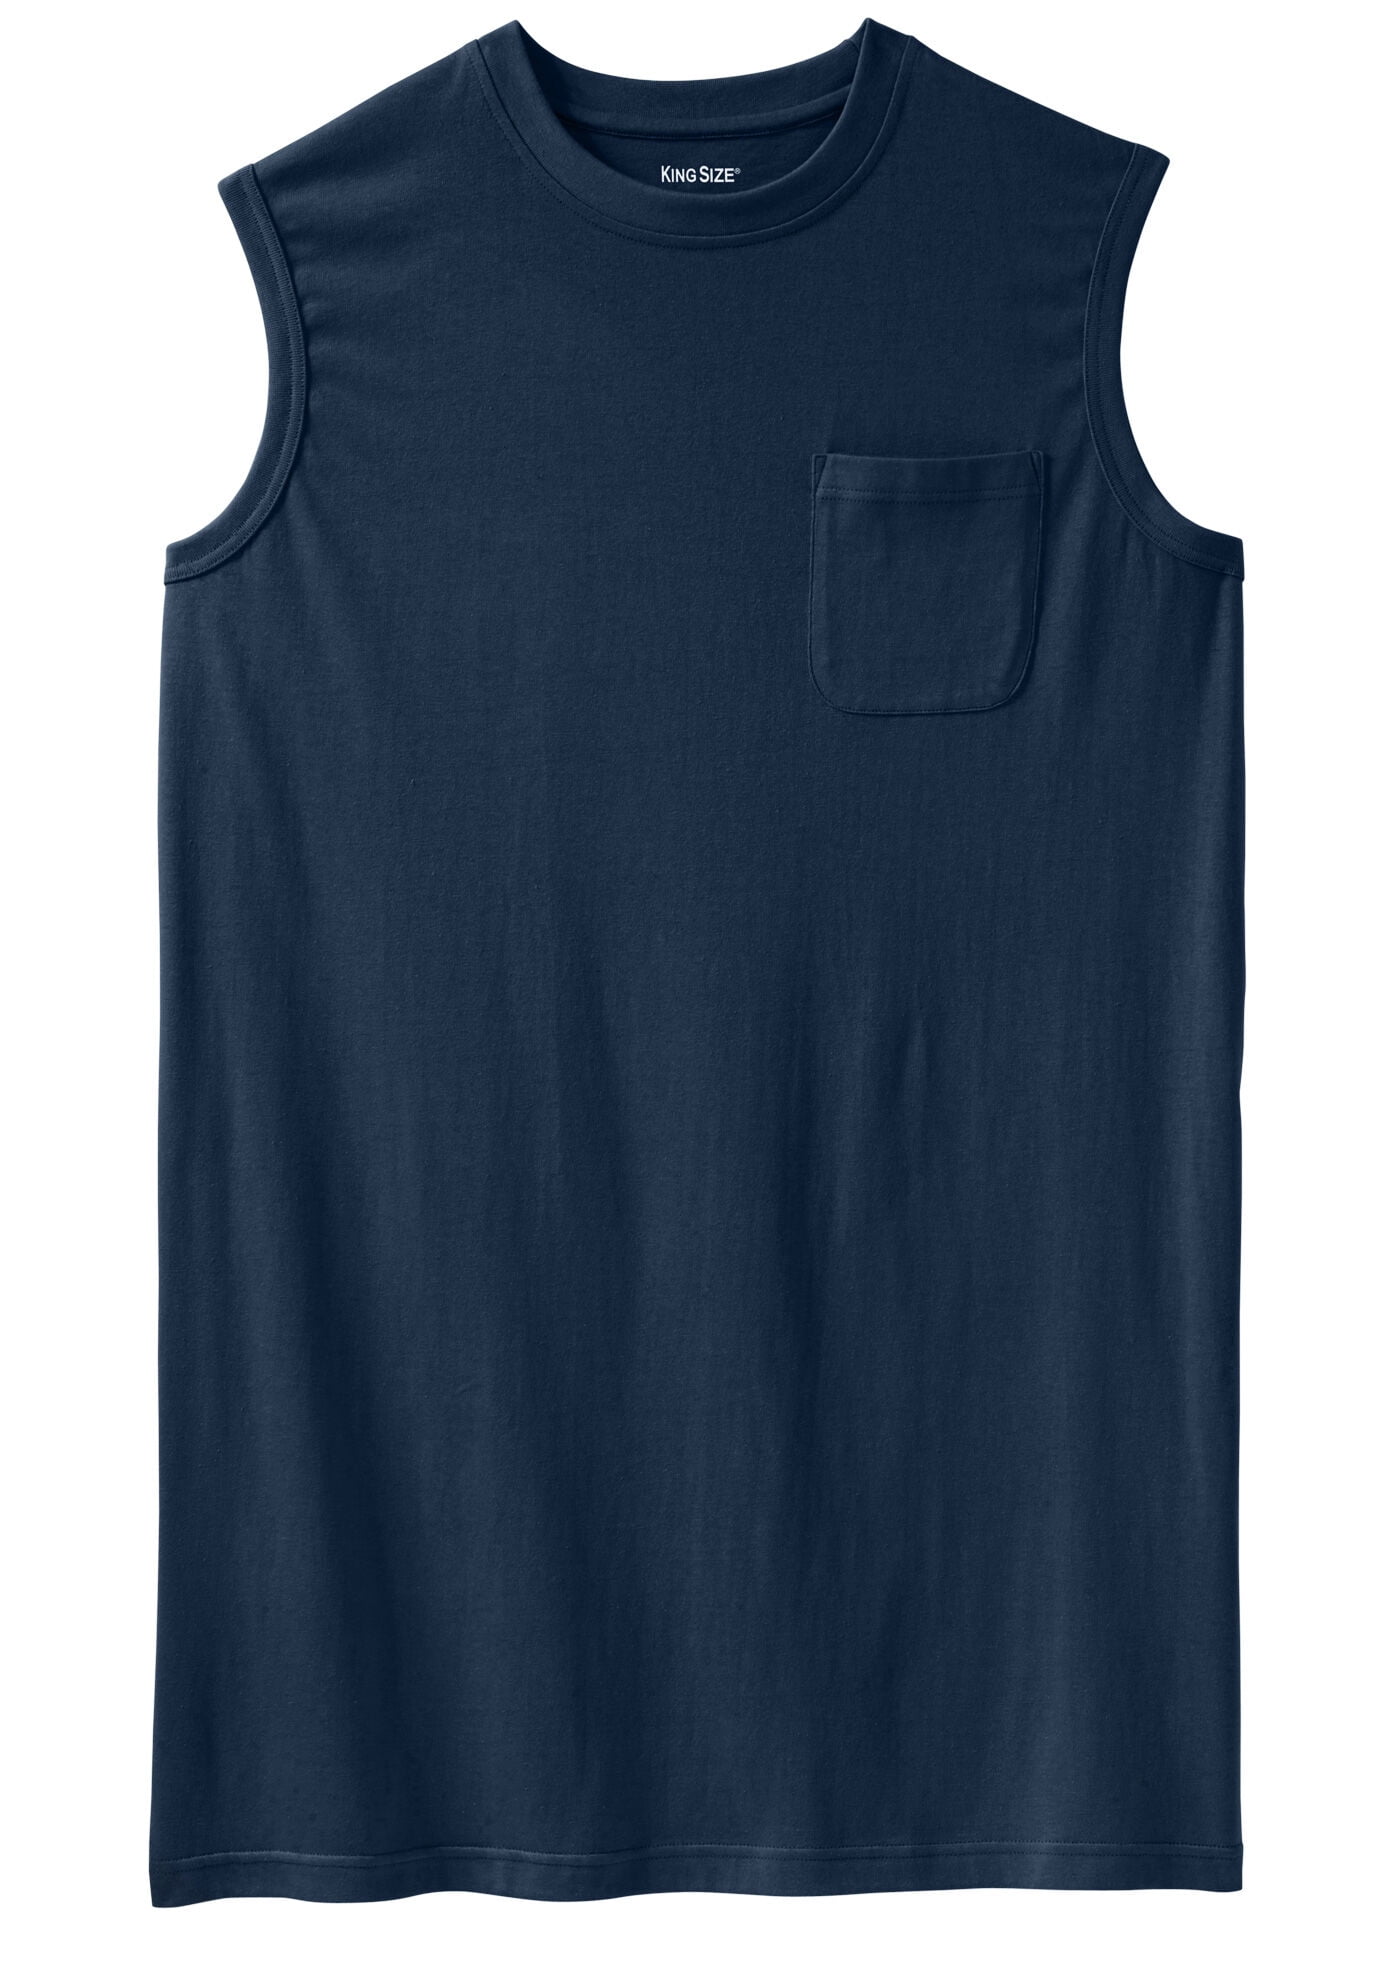 KingSize Men's Big & Tall Shrink-Less Longer-Length Lightweight Muscle Pocket Tee Shirt 